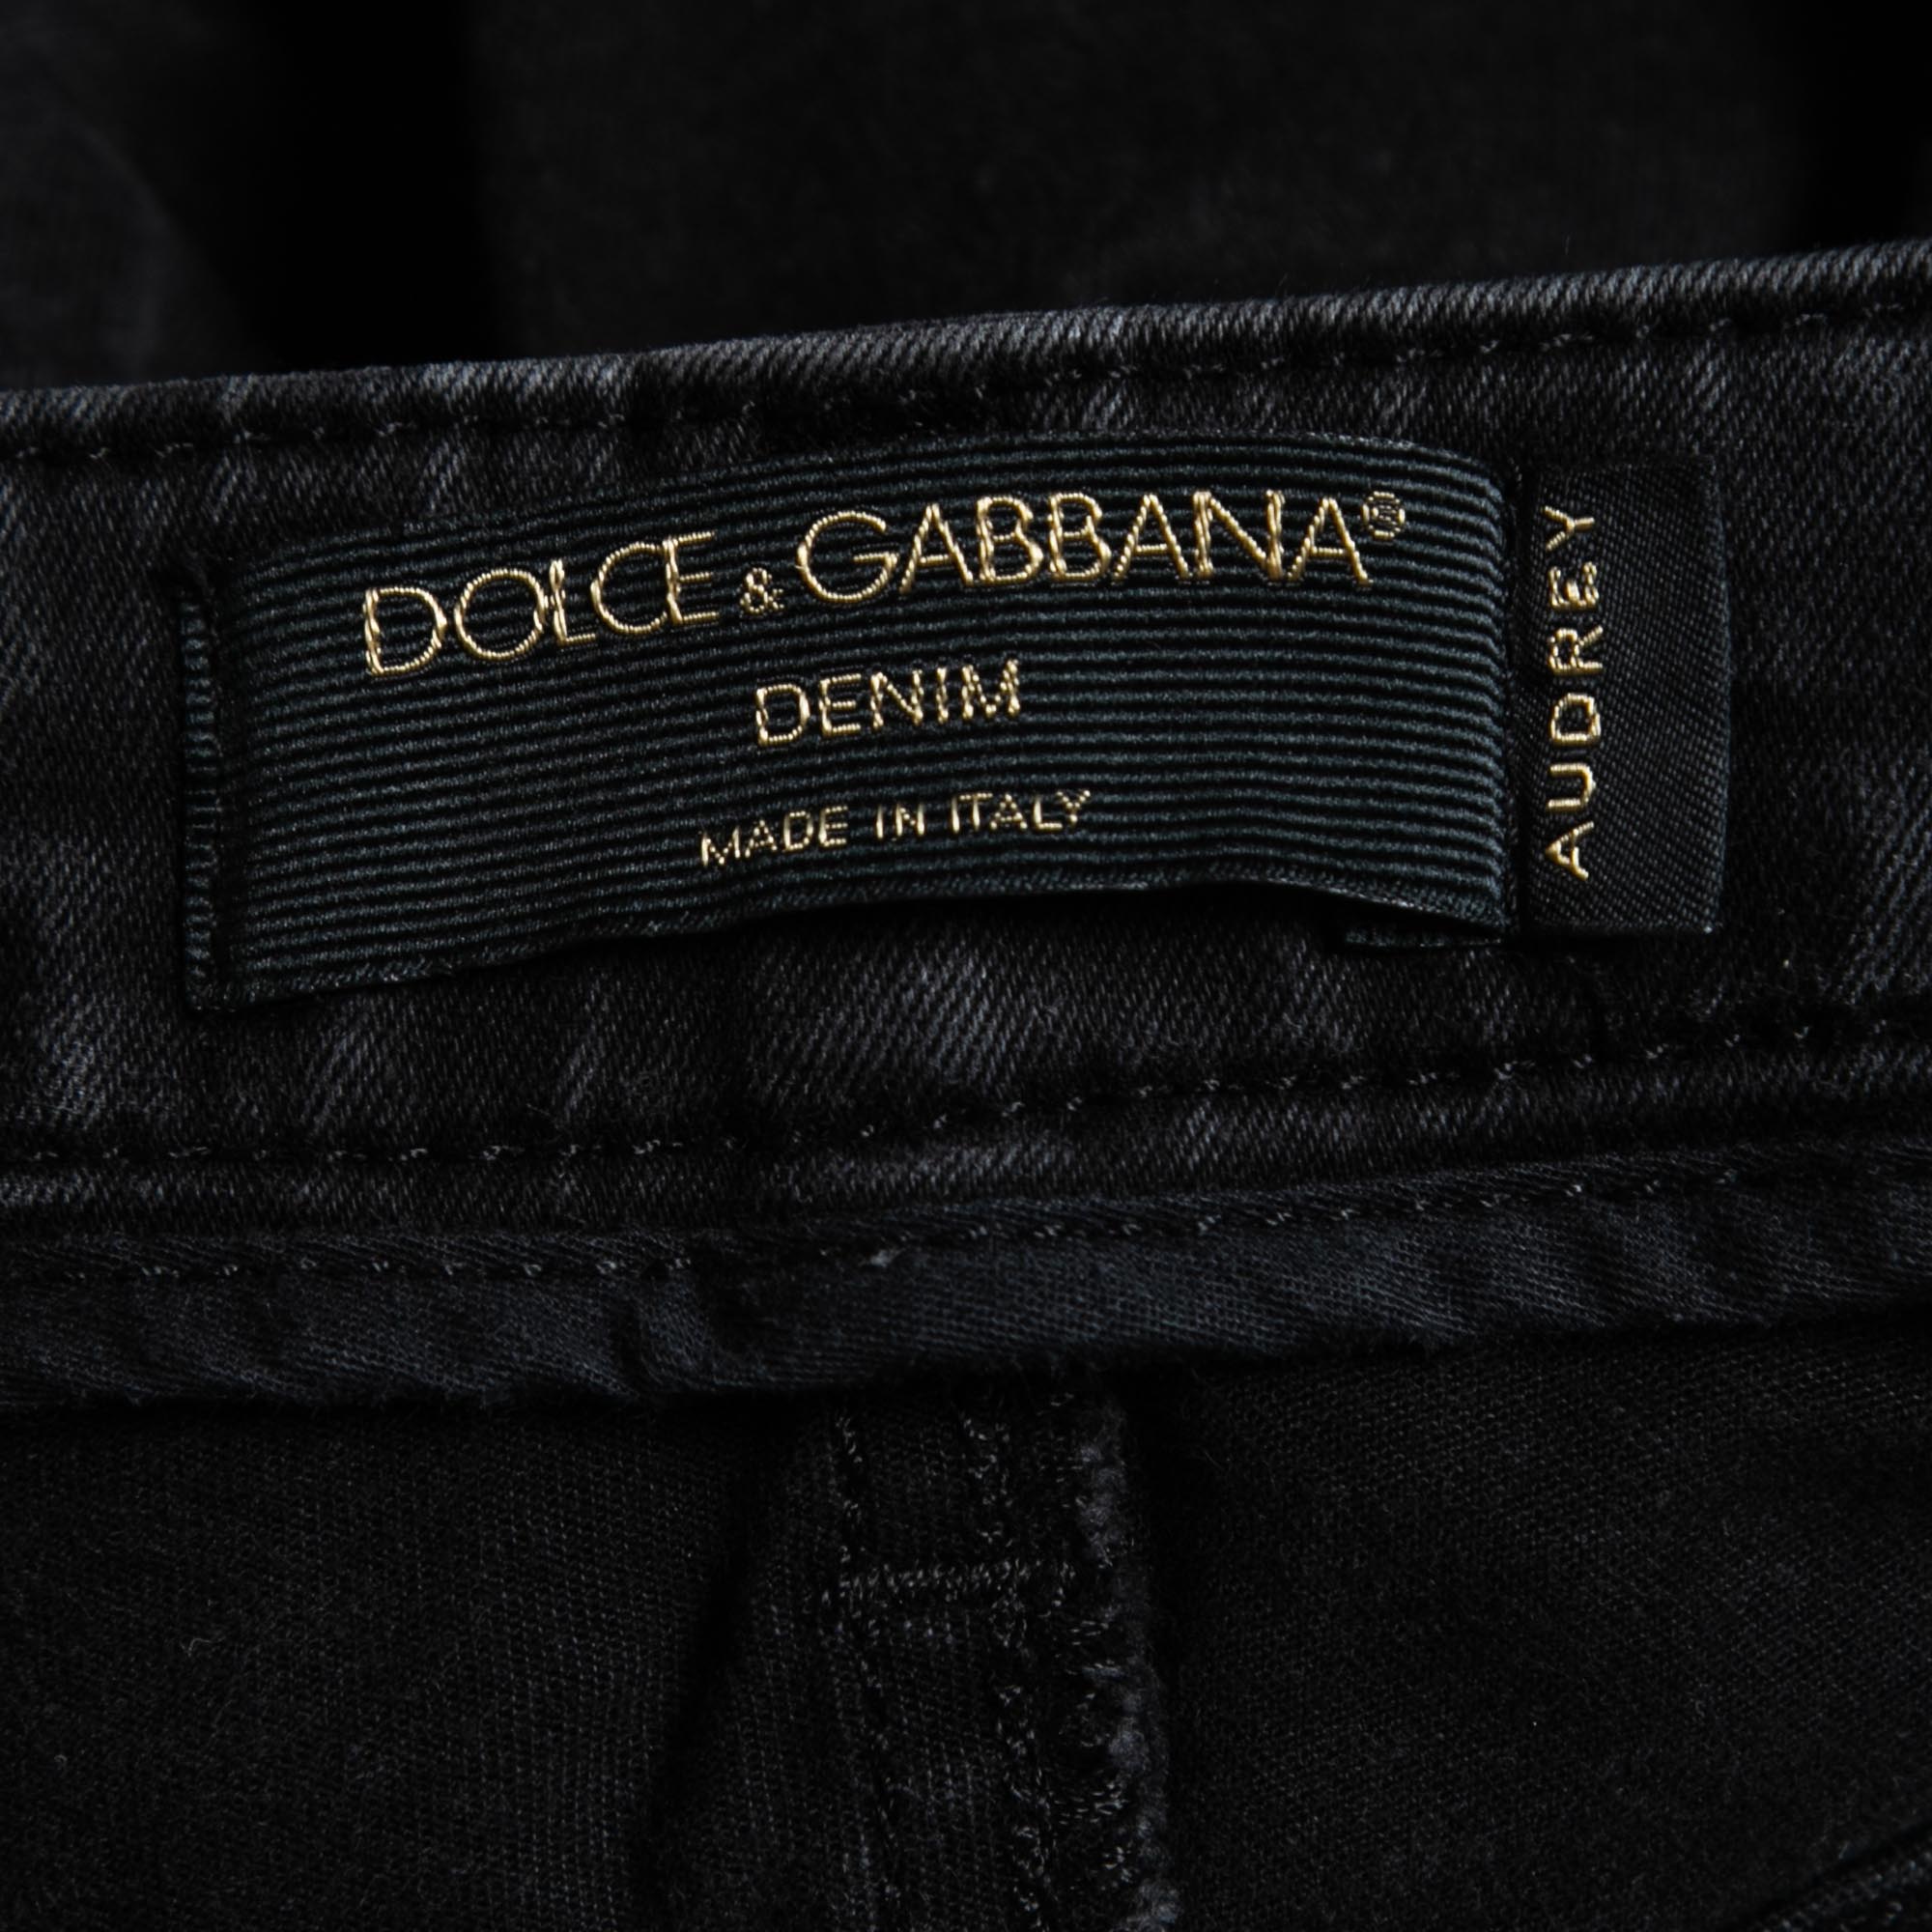 Dolce & Gabbana Black Denim Audrey Skinny Jeans XS Waist 24